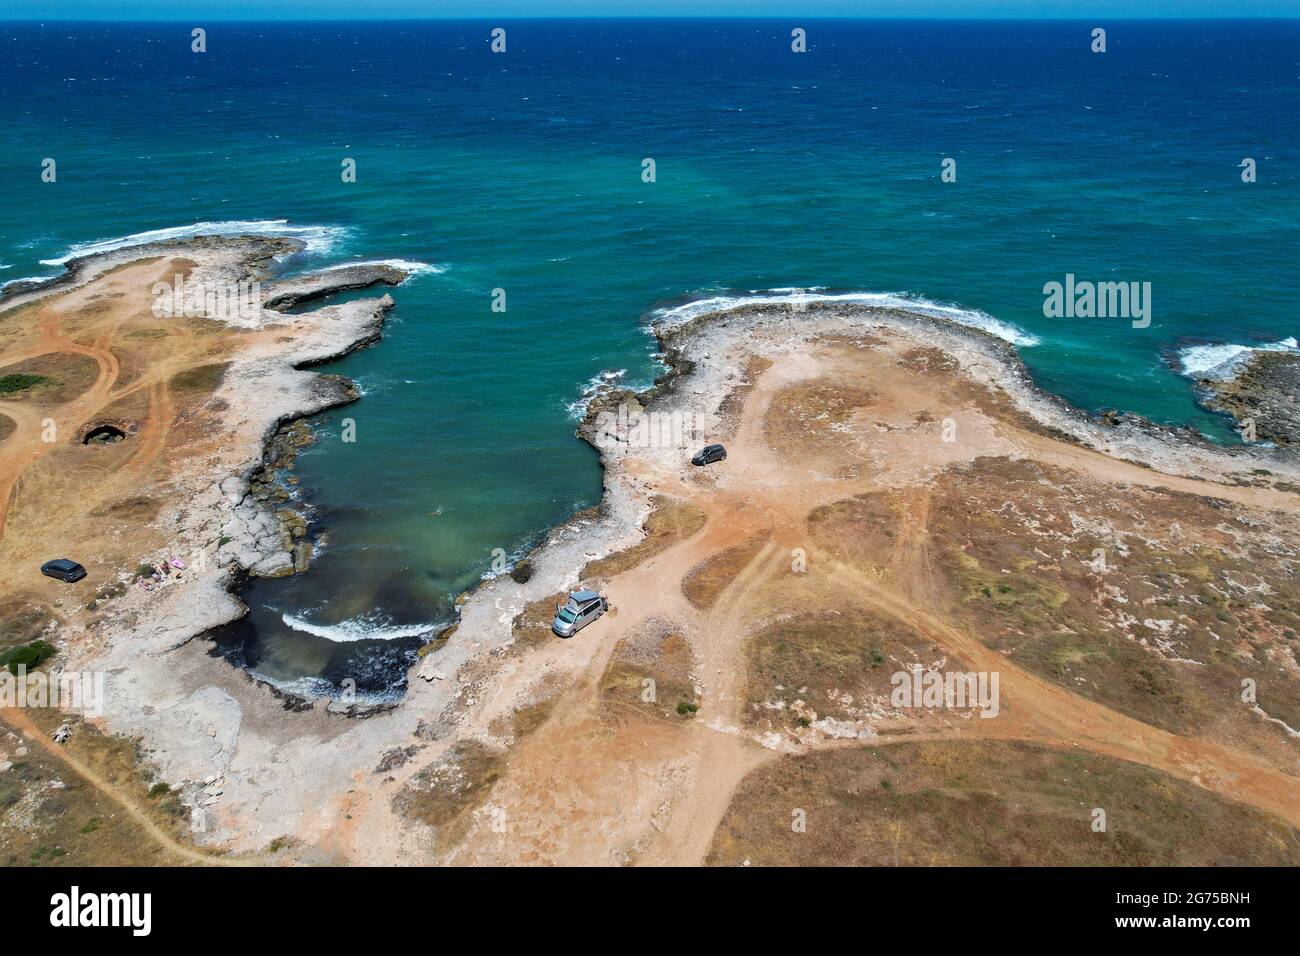 Costa Merlata, Ostuni fotografato con il drone dall'alto. Offre uno dei tratti di costa più belli della Puglia e dell'Italia con i piccoli gabbiani Foto Stock